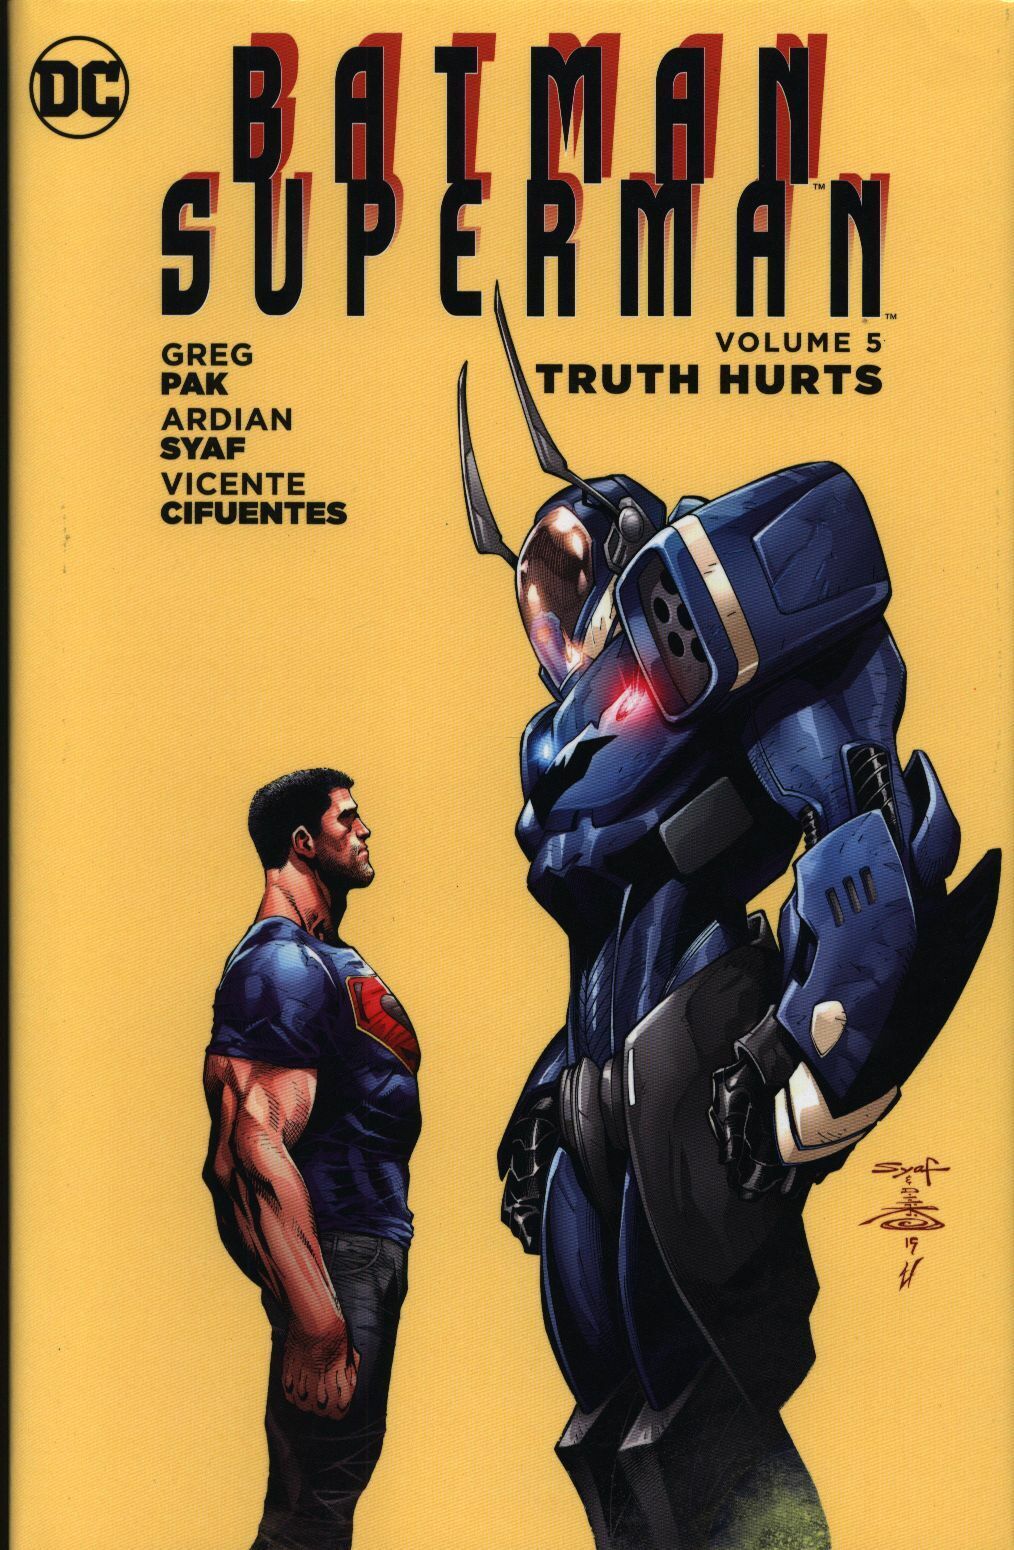 (Original book) DC COMICS BATMAN / SUPERMAN TRUTH HURTS (HC) 5